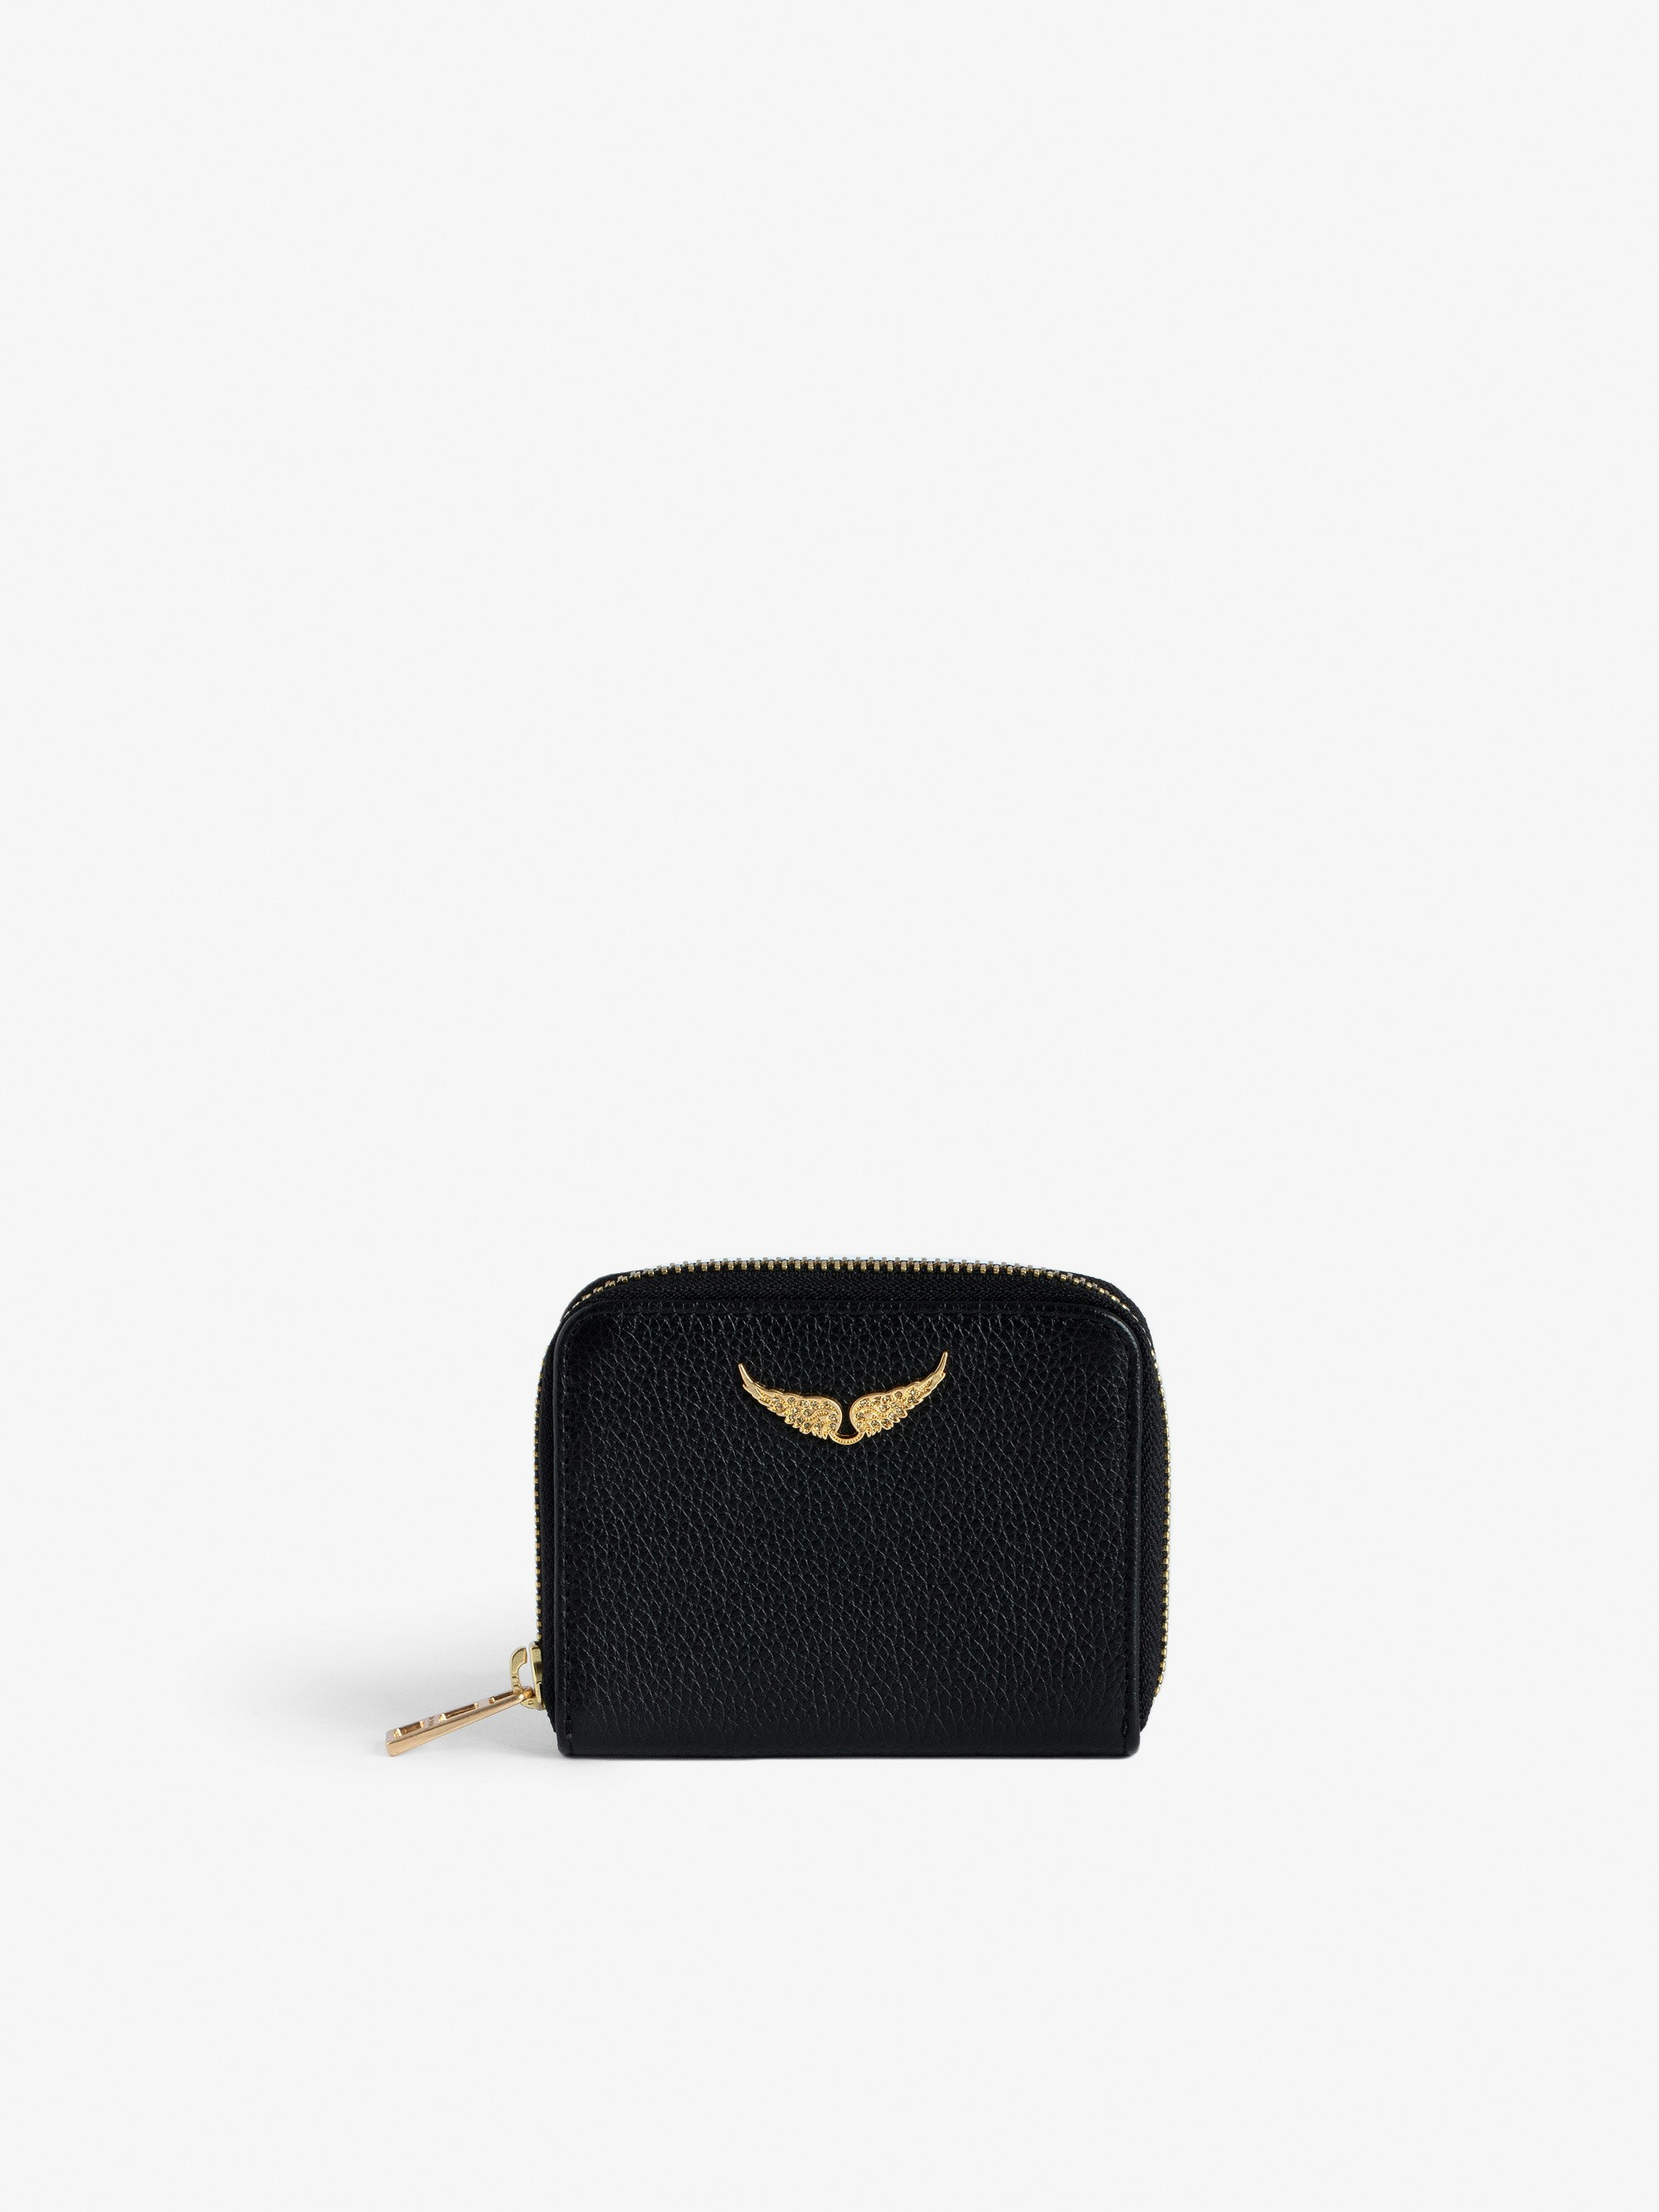 Porte-Monnaie Mini ZV - Portefeuille en cuir grainé noir à charm ailes dorées en strass.